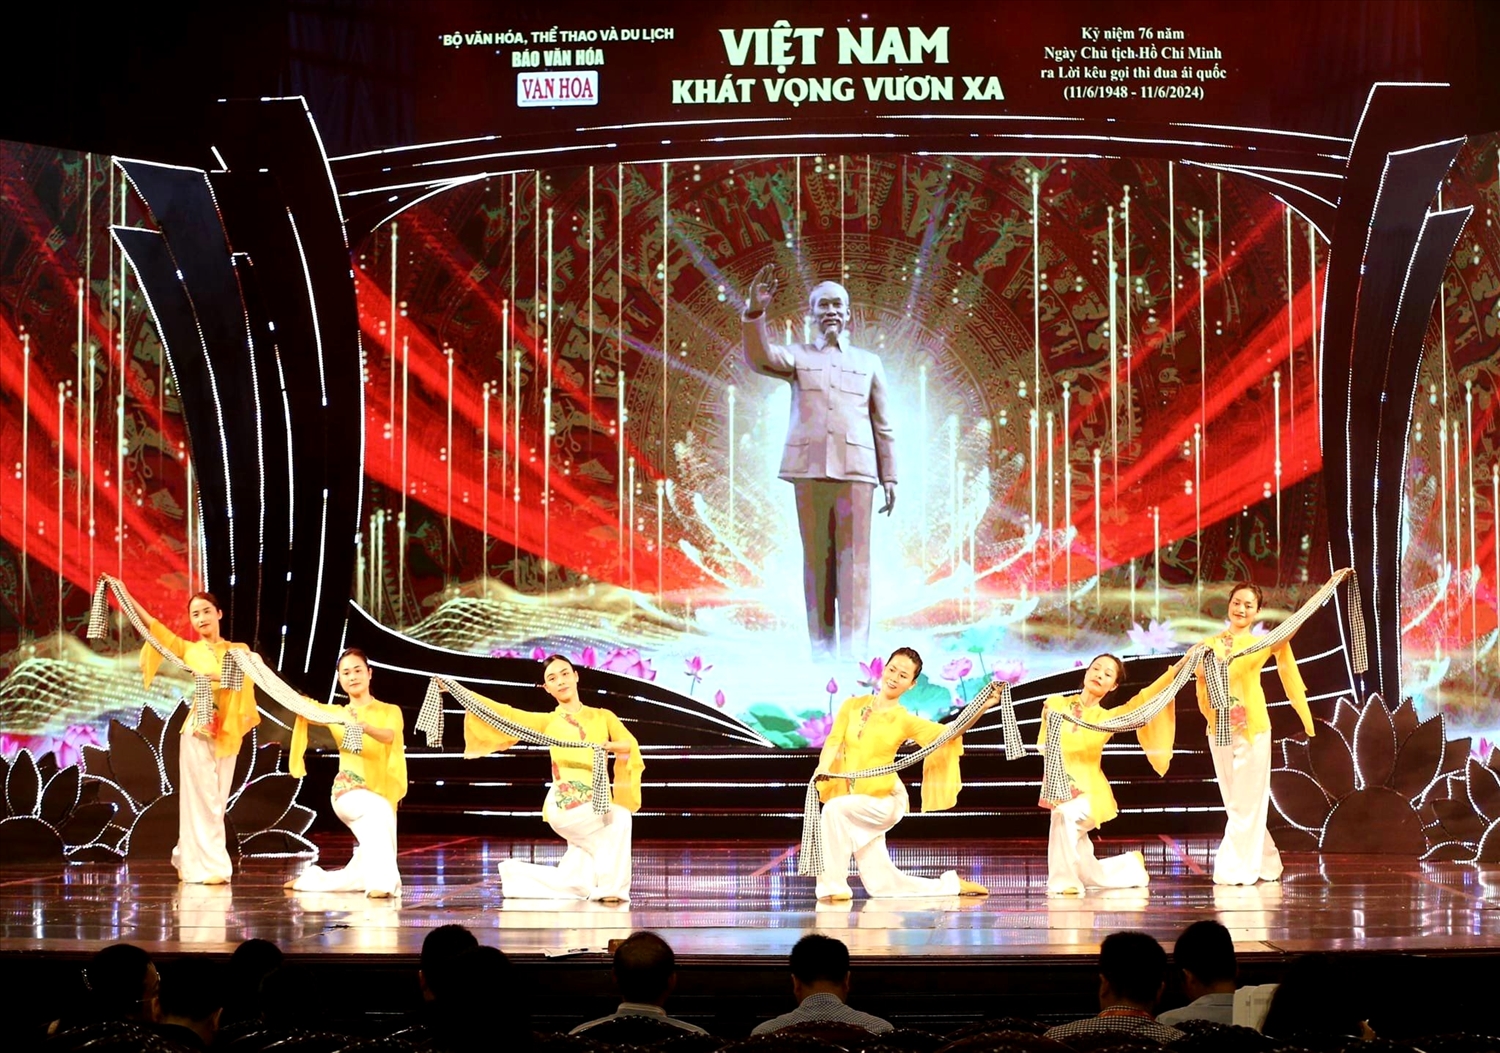 Từ lòng kính yêu vô hạn đối với vị lãnh tụ vĩ đại của dân tộc, các nghệ sĩ đã thể hiện những nhạc phẩm bất hủ về Chủ tịch Hồ Chí Minh